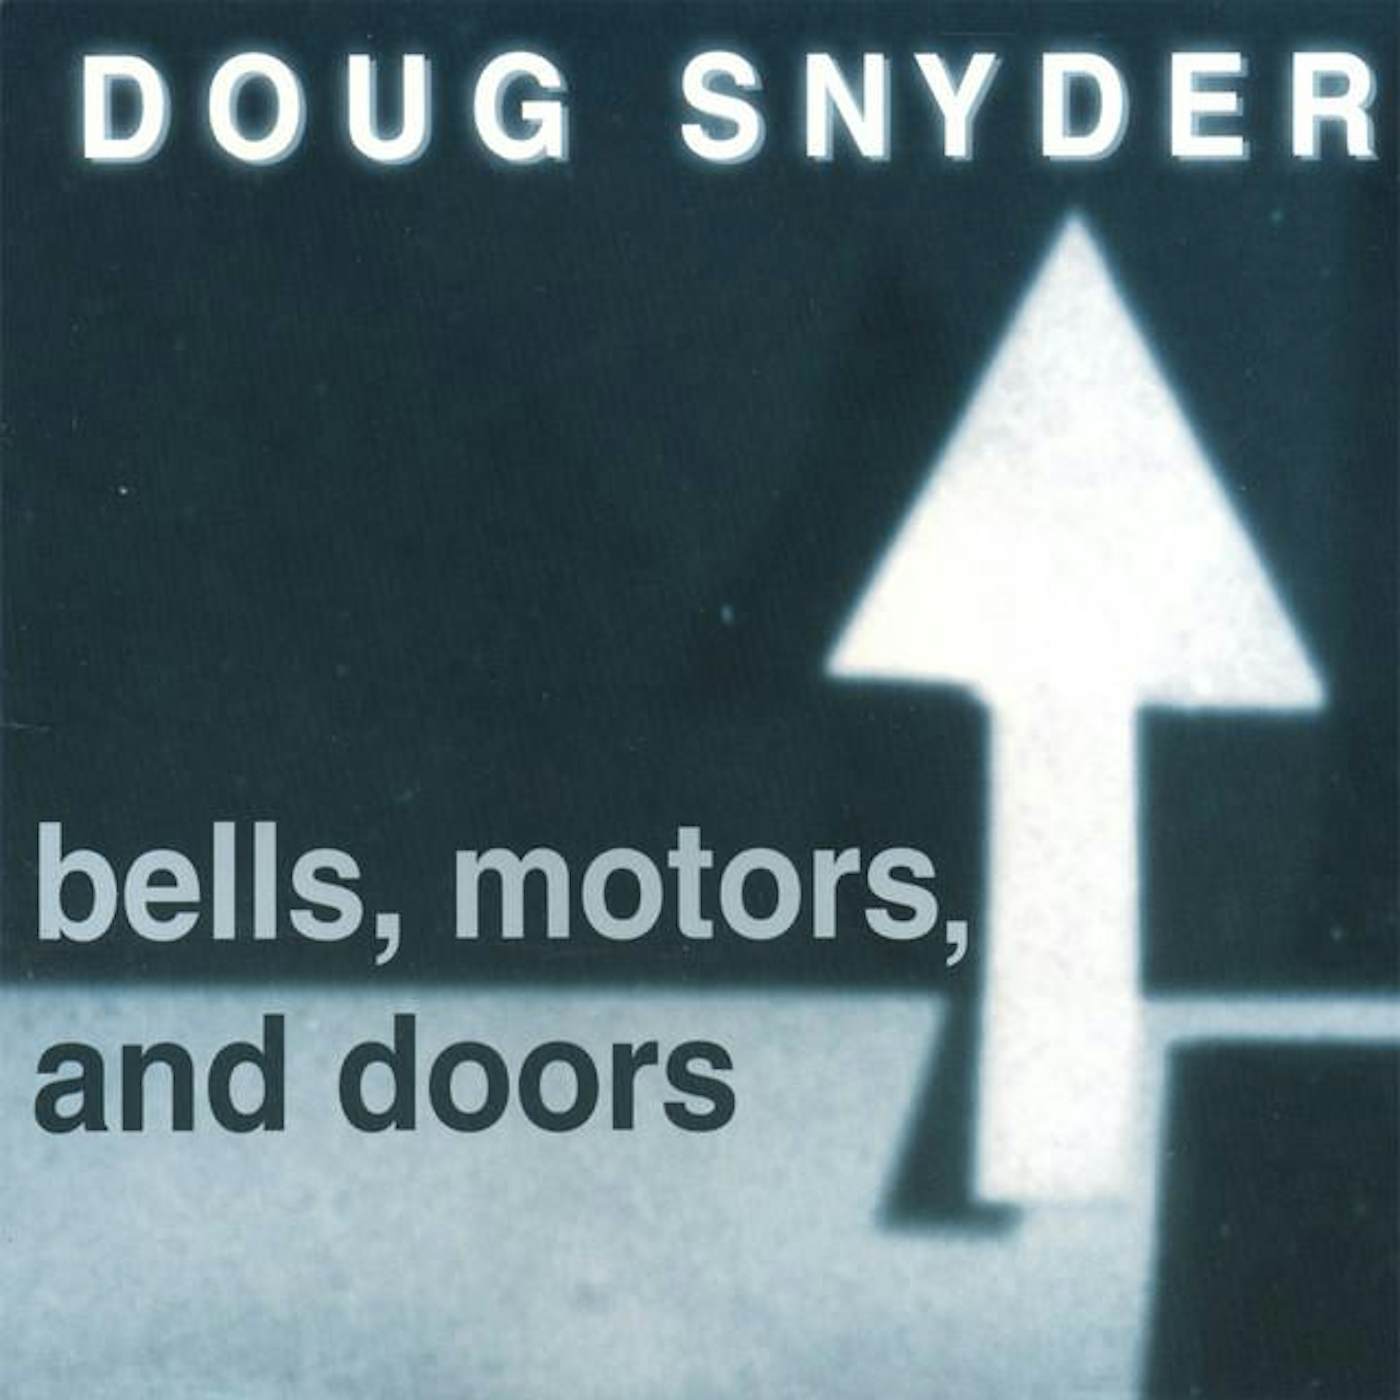 Doug Snyder